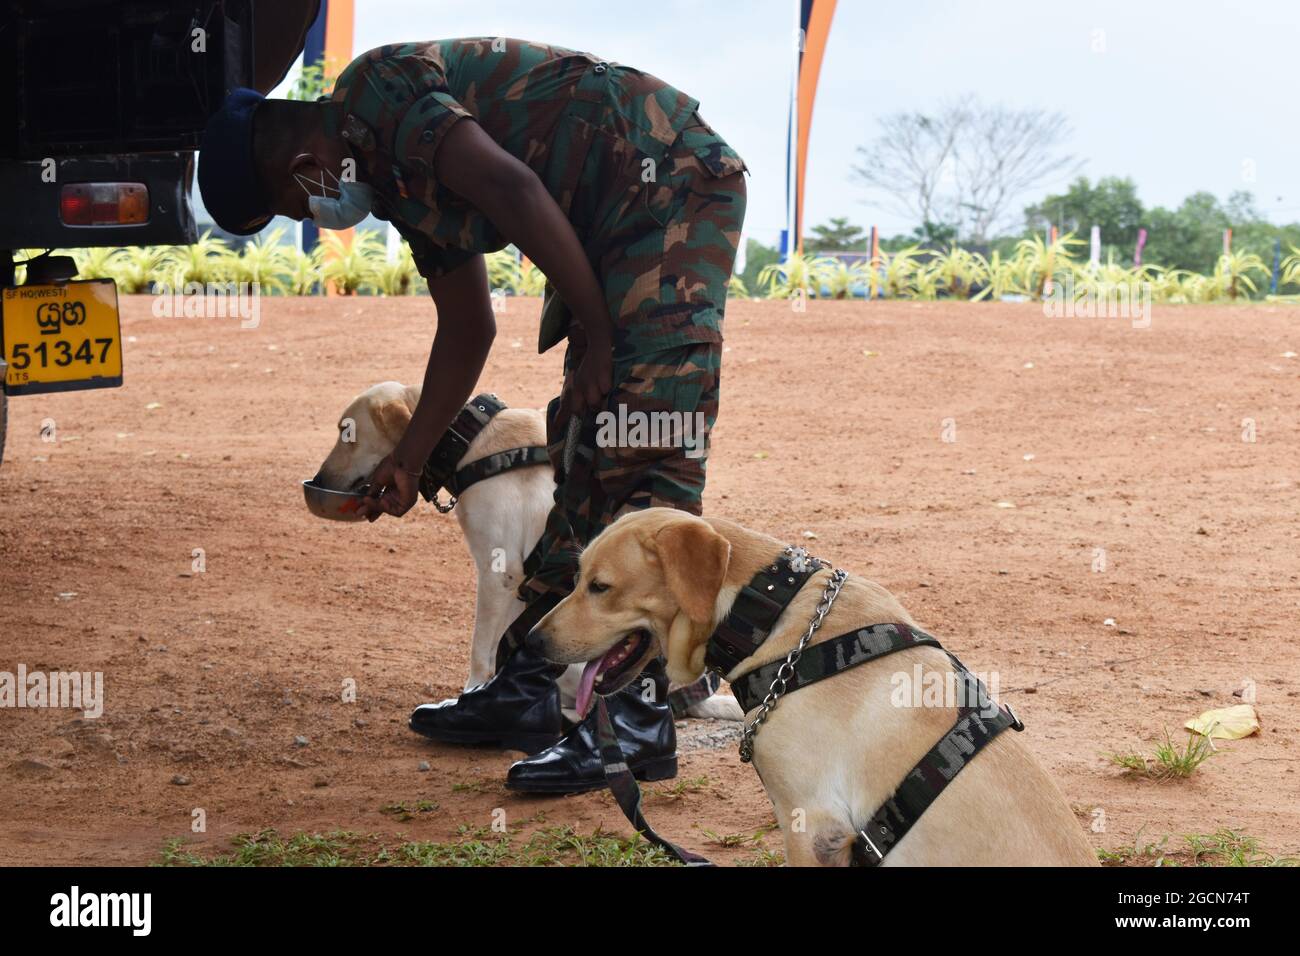 Les chiens de l'armée du Labrador Retriever sont prêts à fouiller les lieux avant un match de cricket. Au pittoresque terrain de cricket de l'Army Ordinance. Dombagode. Sri Lanka. Banque D'Images